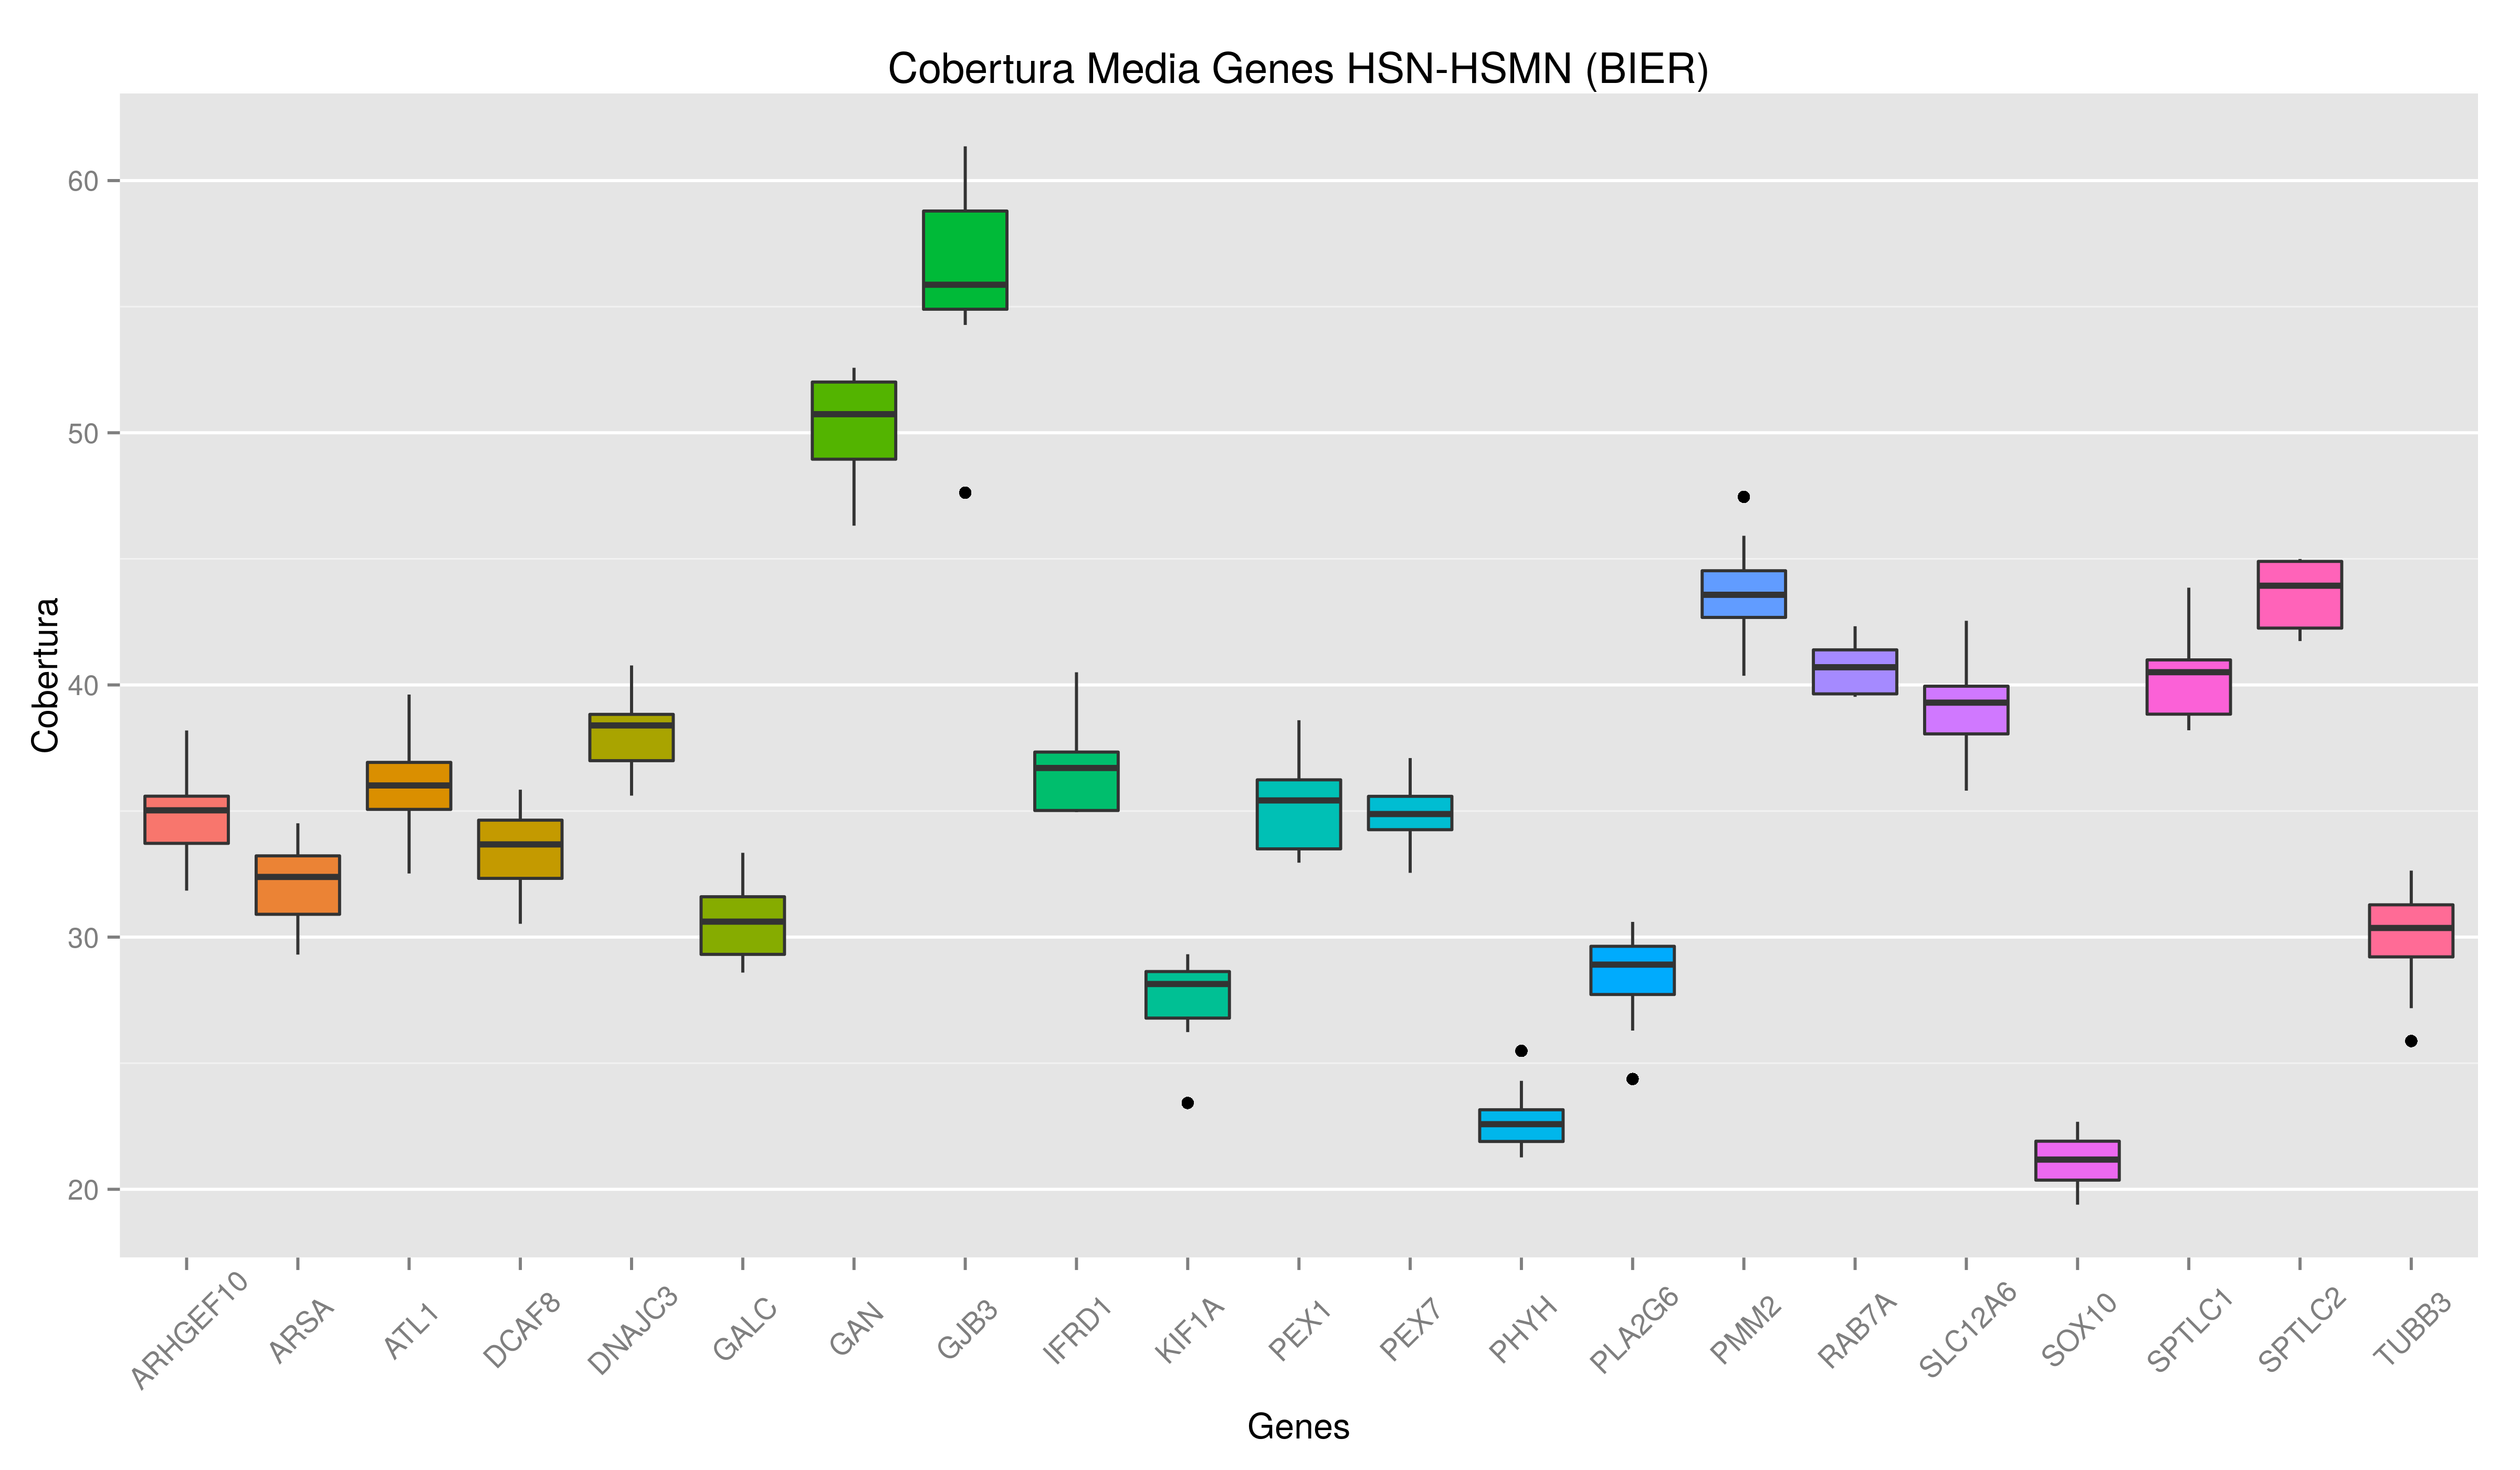 HSN-HSMN genes BIER